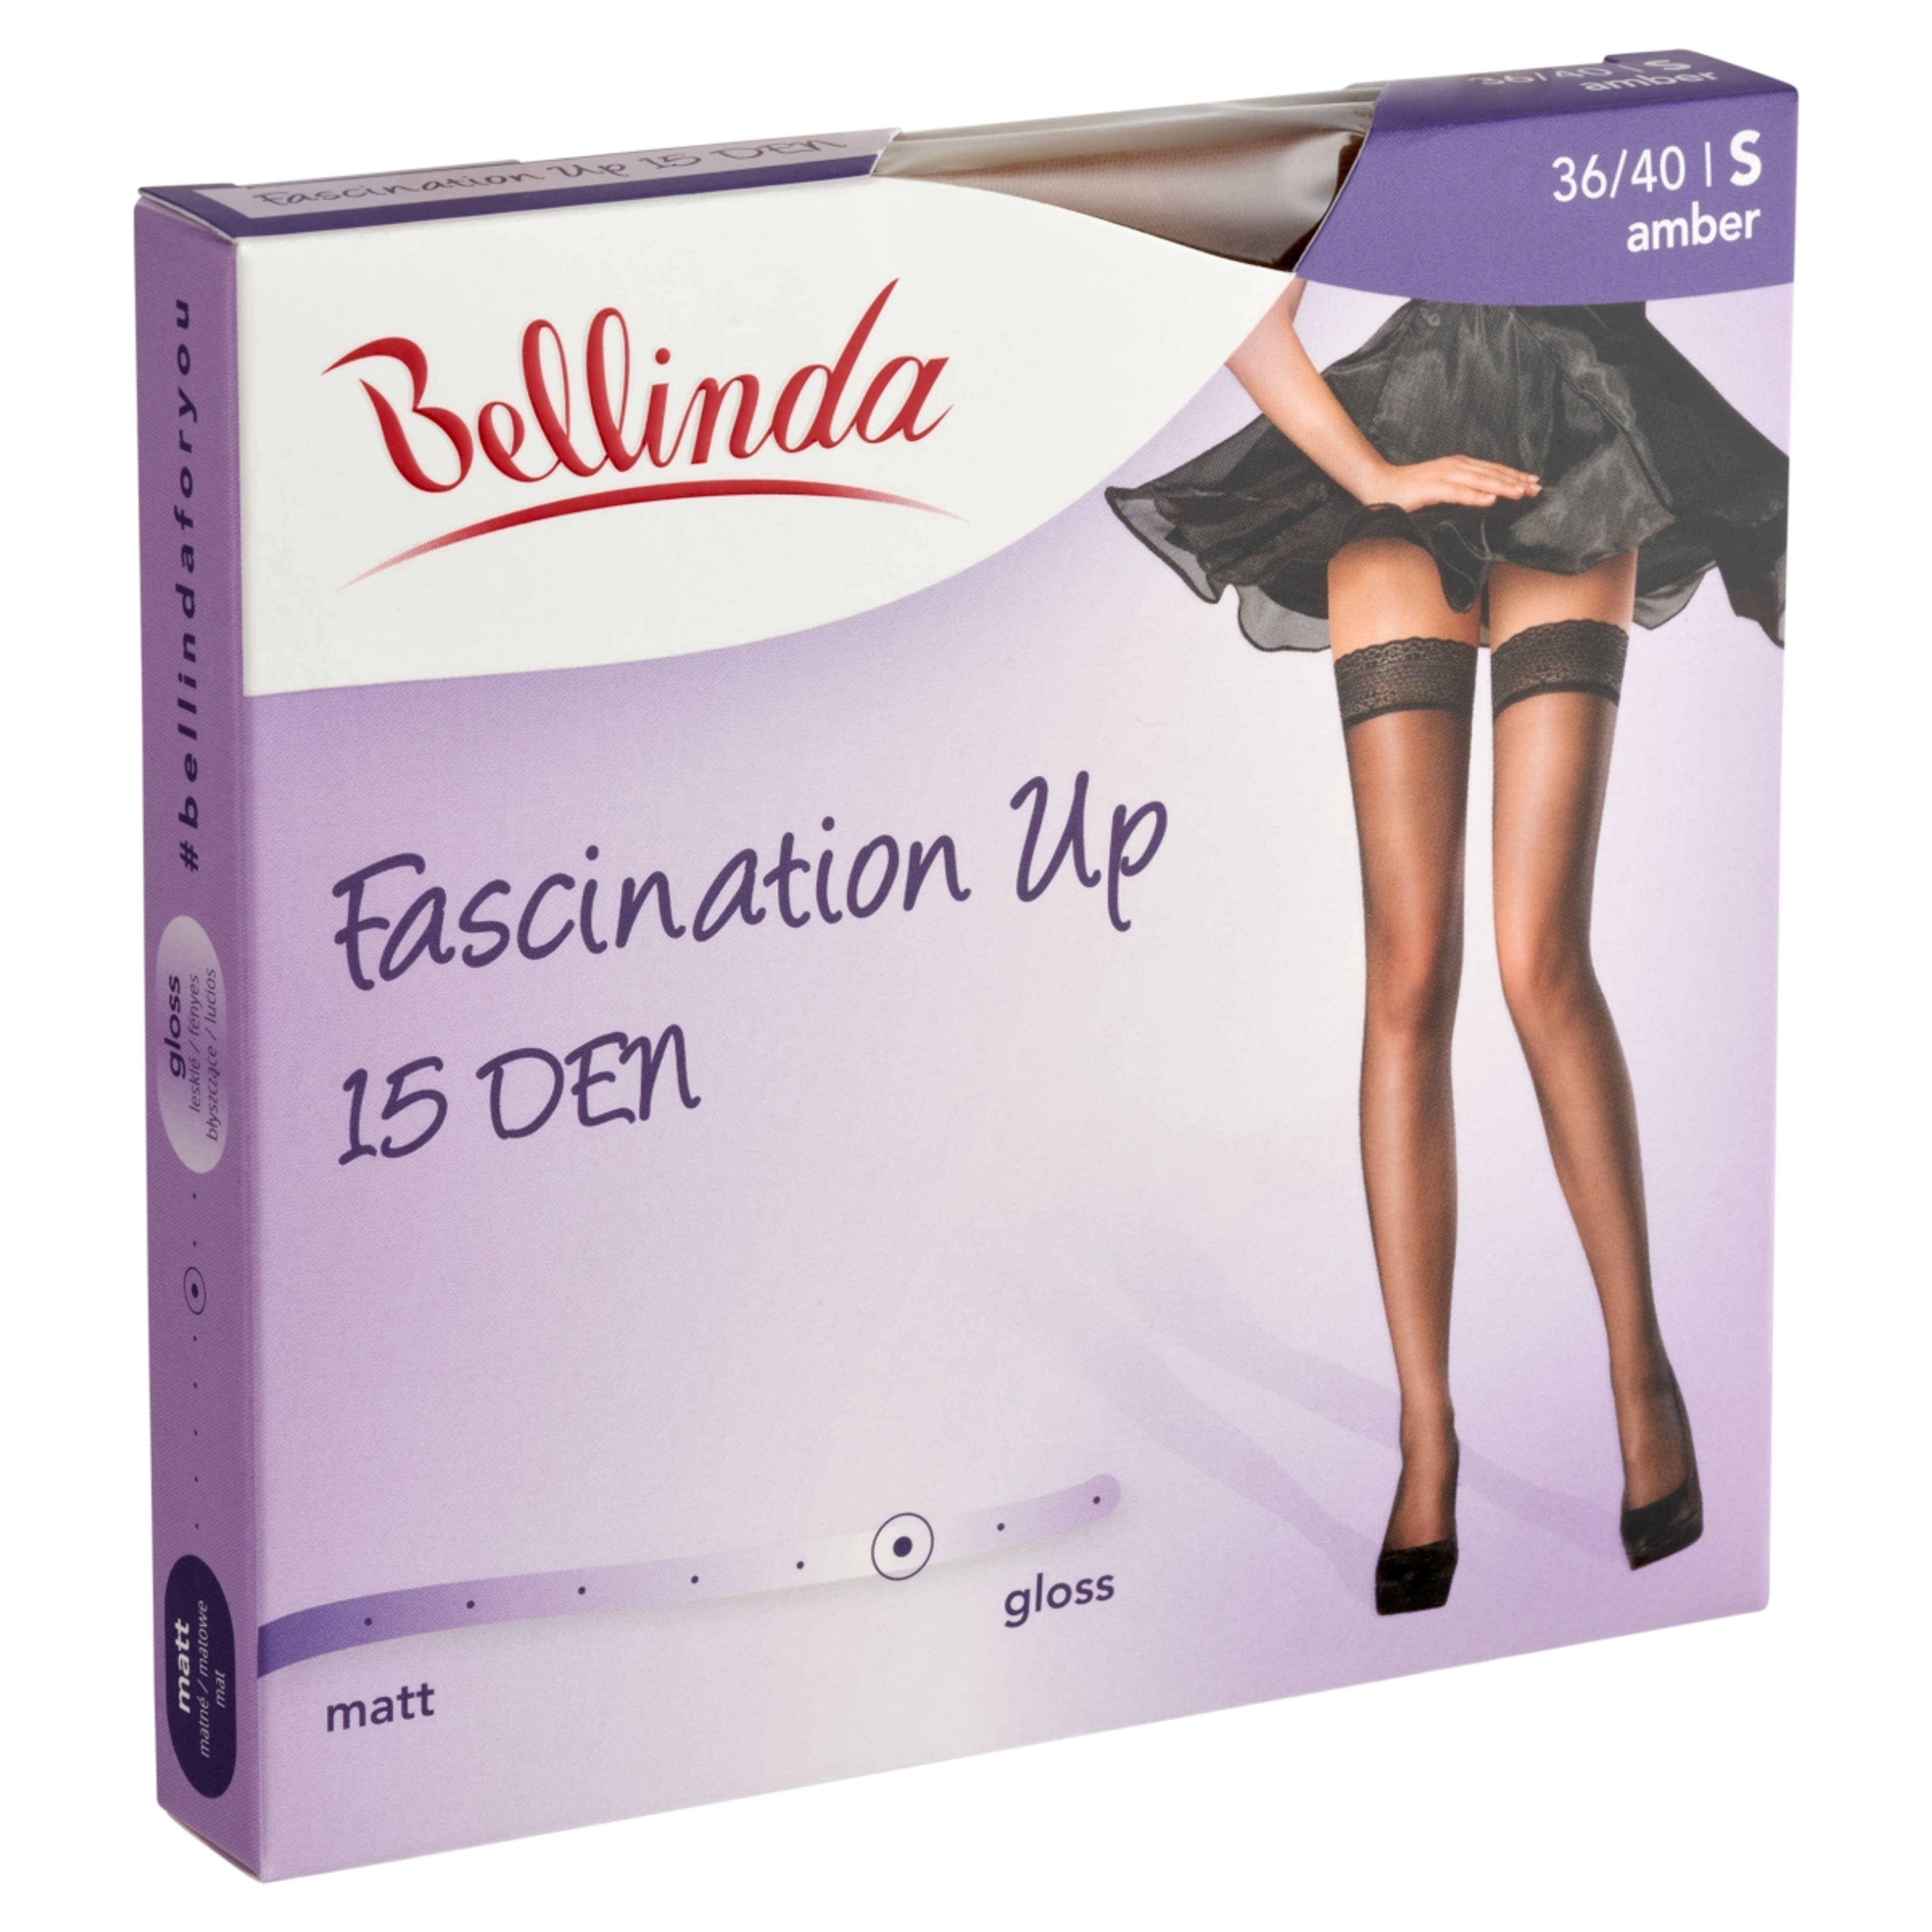 Bellinda Fascination 15 Den Amber S Combfix - 1 db-2